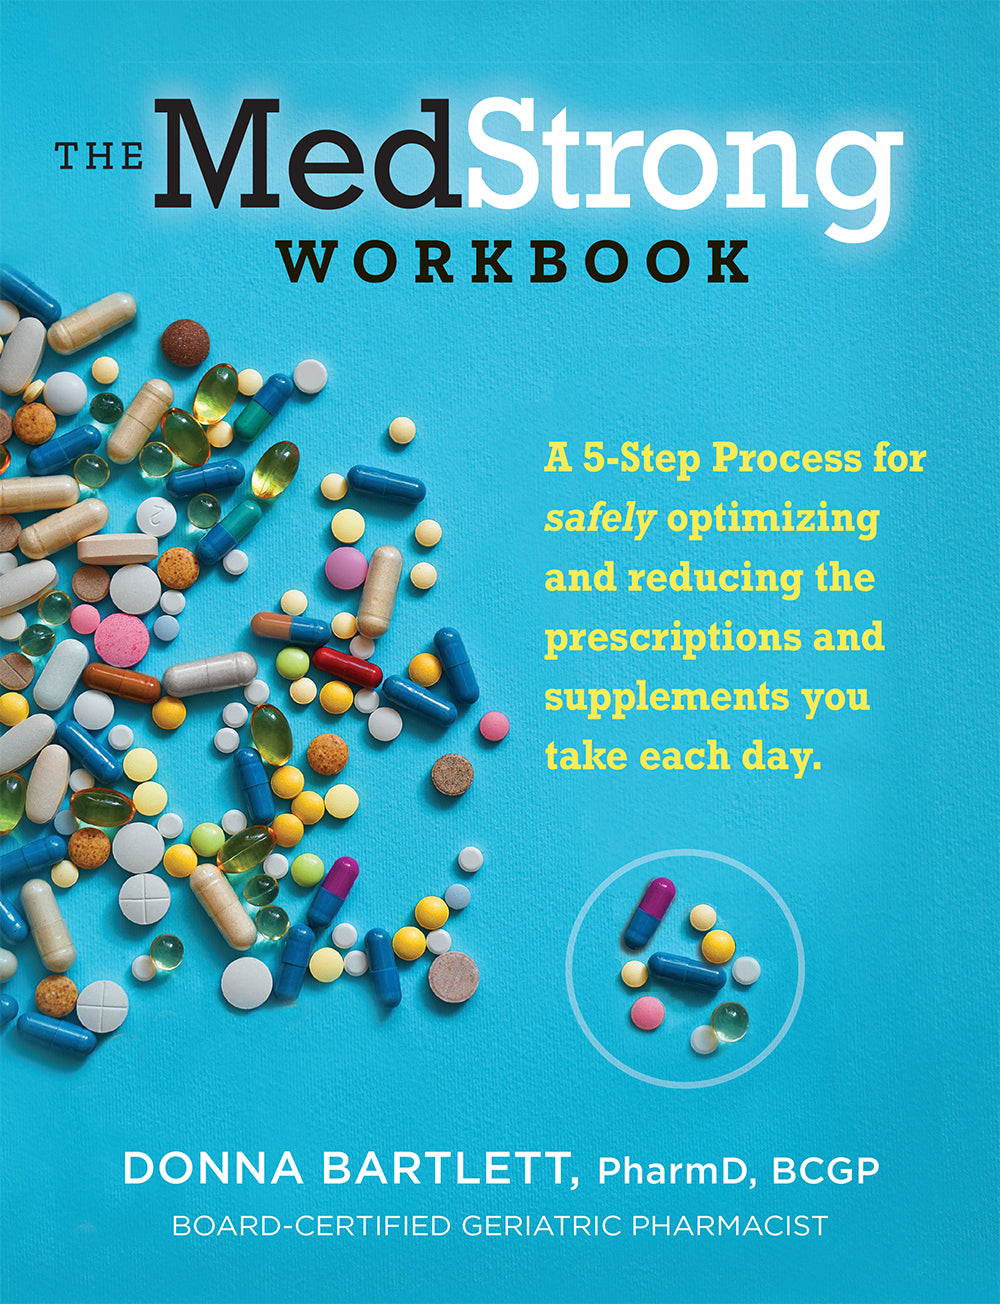 EBook: The MedStrong Workbook